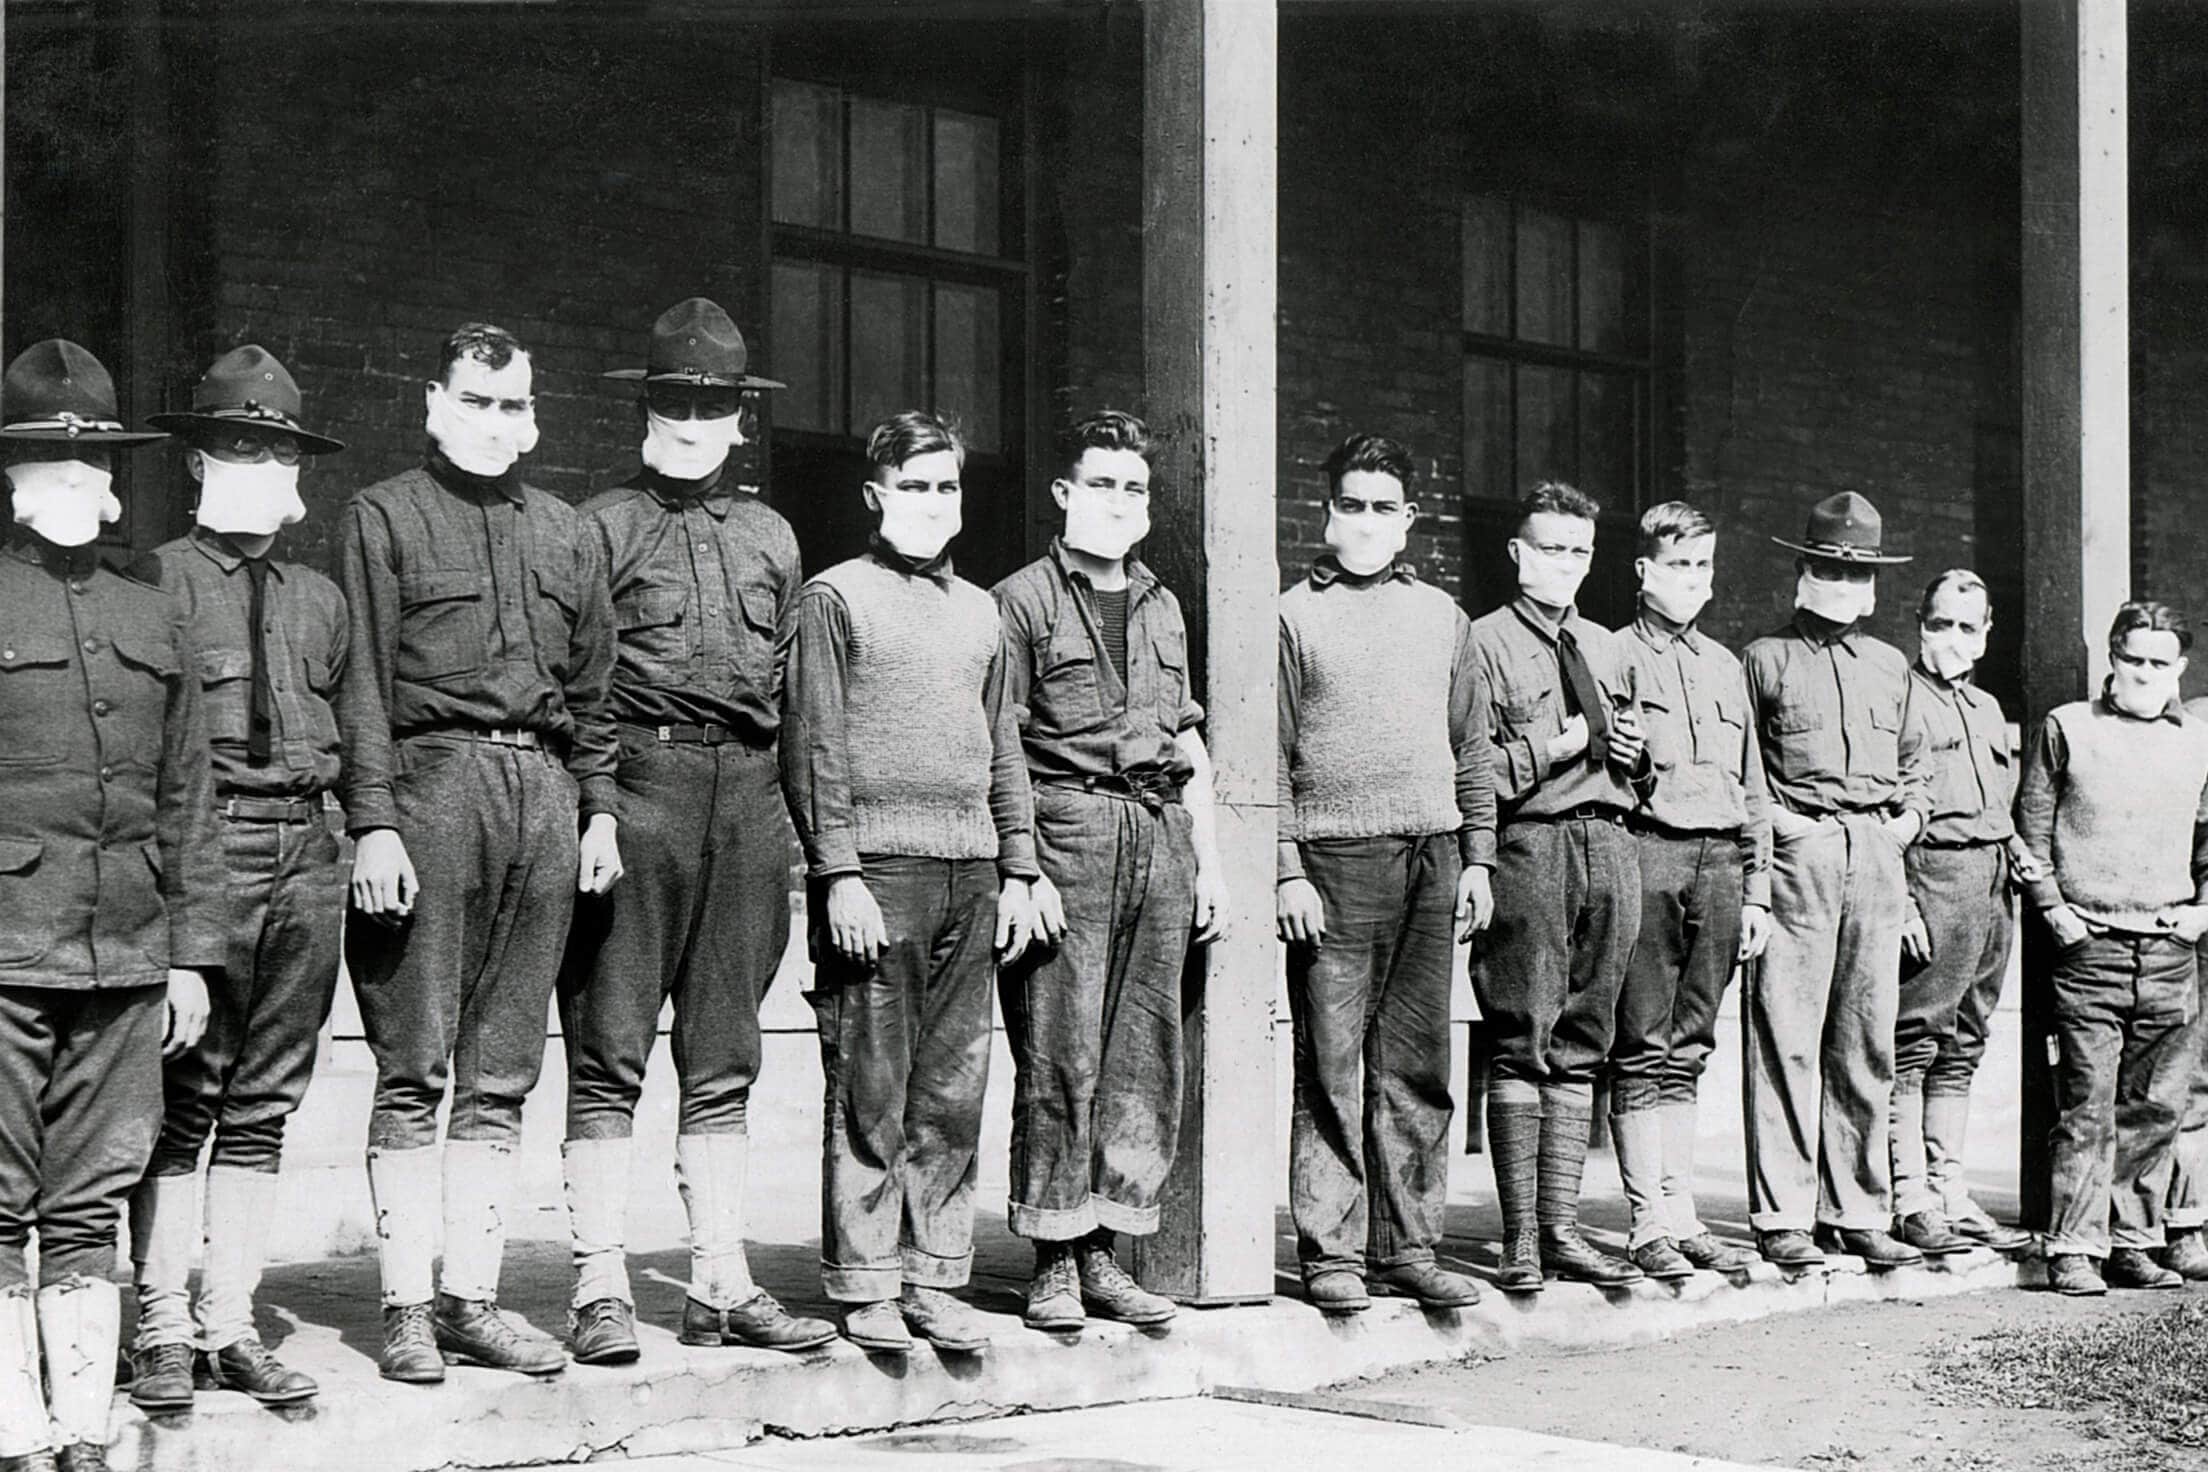 رجال جيش في طابور يرتدون كمامات في أحد المستشفيات أثناء جائحة الإنفلونزا عامي 1918 و1919